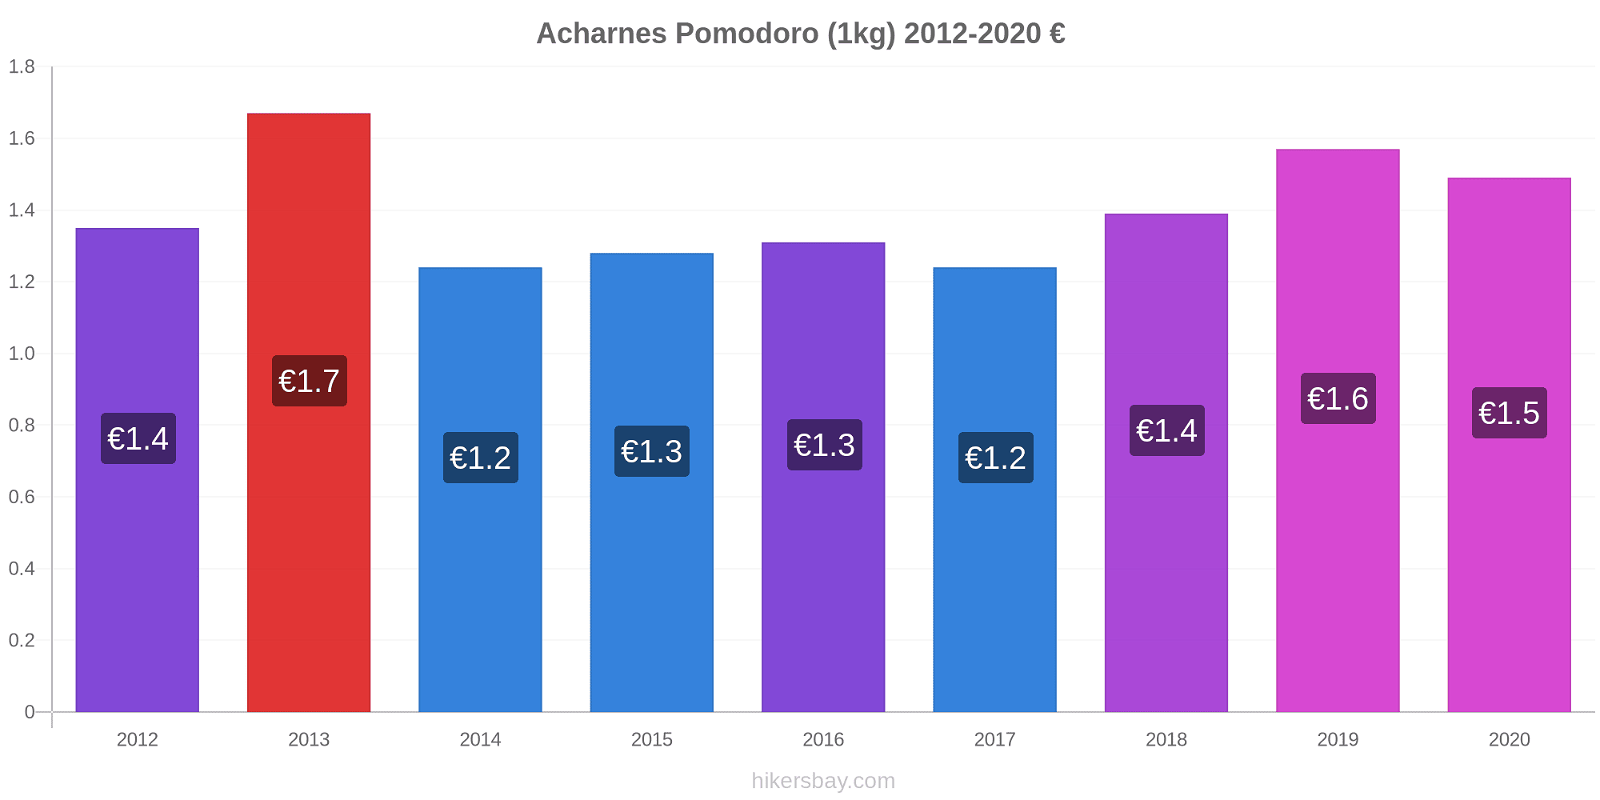 Acharnes variazioni di prezzo Pomodoro (1kg) hikersbay.com